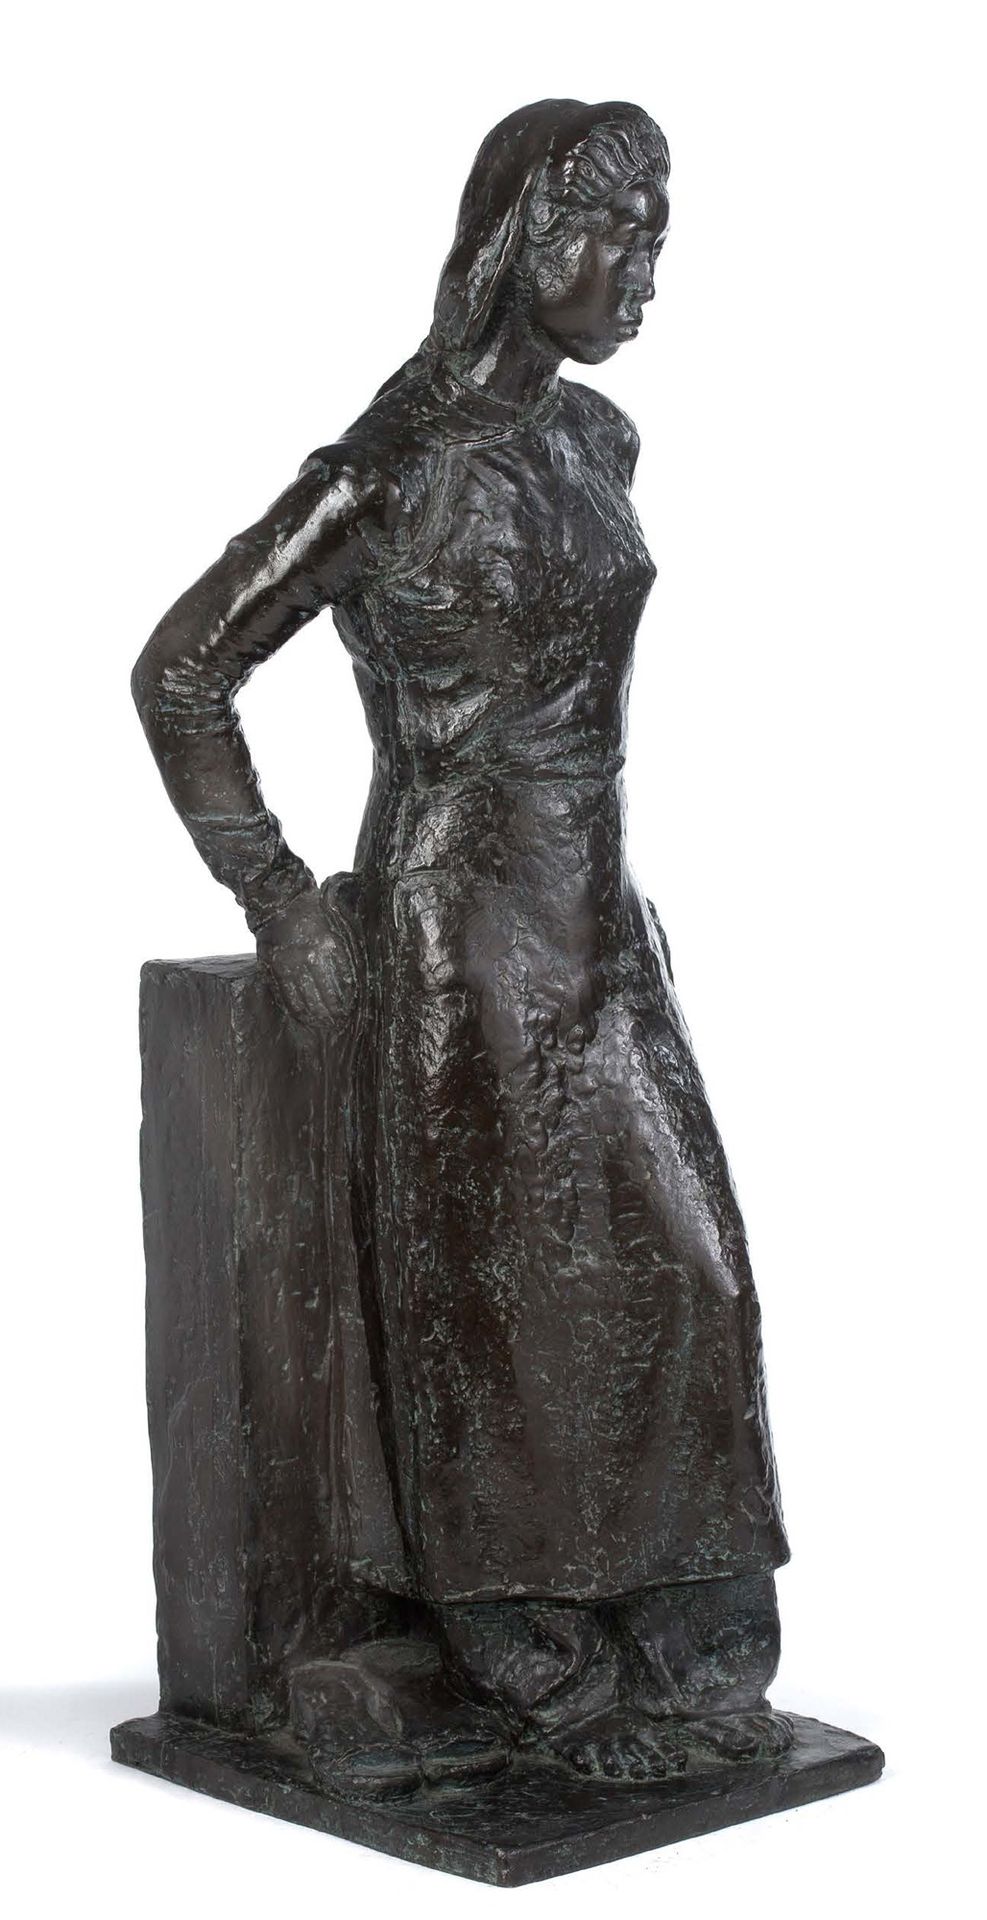 ÉVARISTE JONCHÈRE (1892-1956) 
Congaïe高级时装，1940年

青铜器，带有绿色的铜锈，有签名，标有创始人的印章E.Goda&hellip;